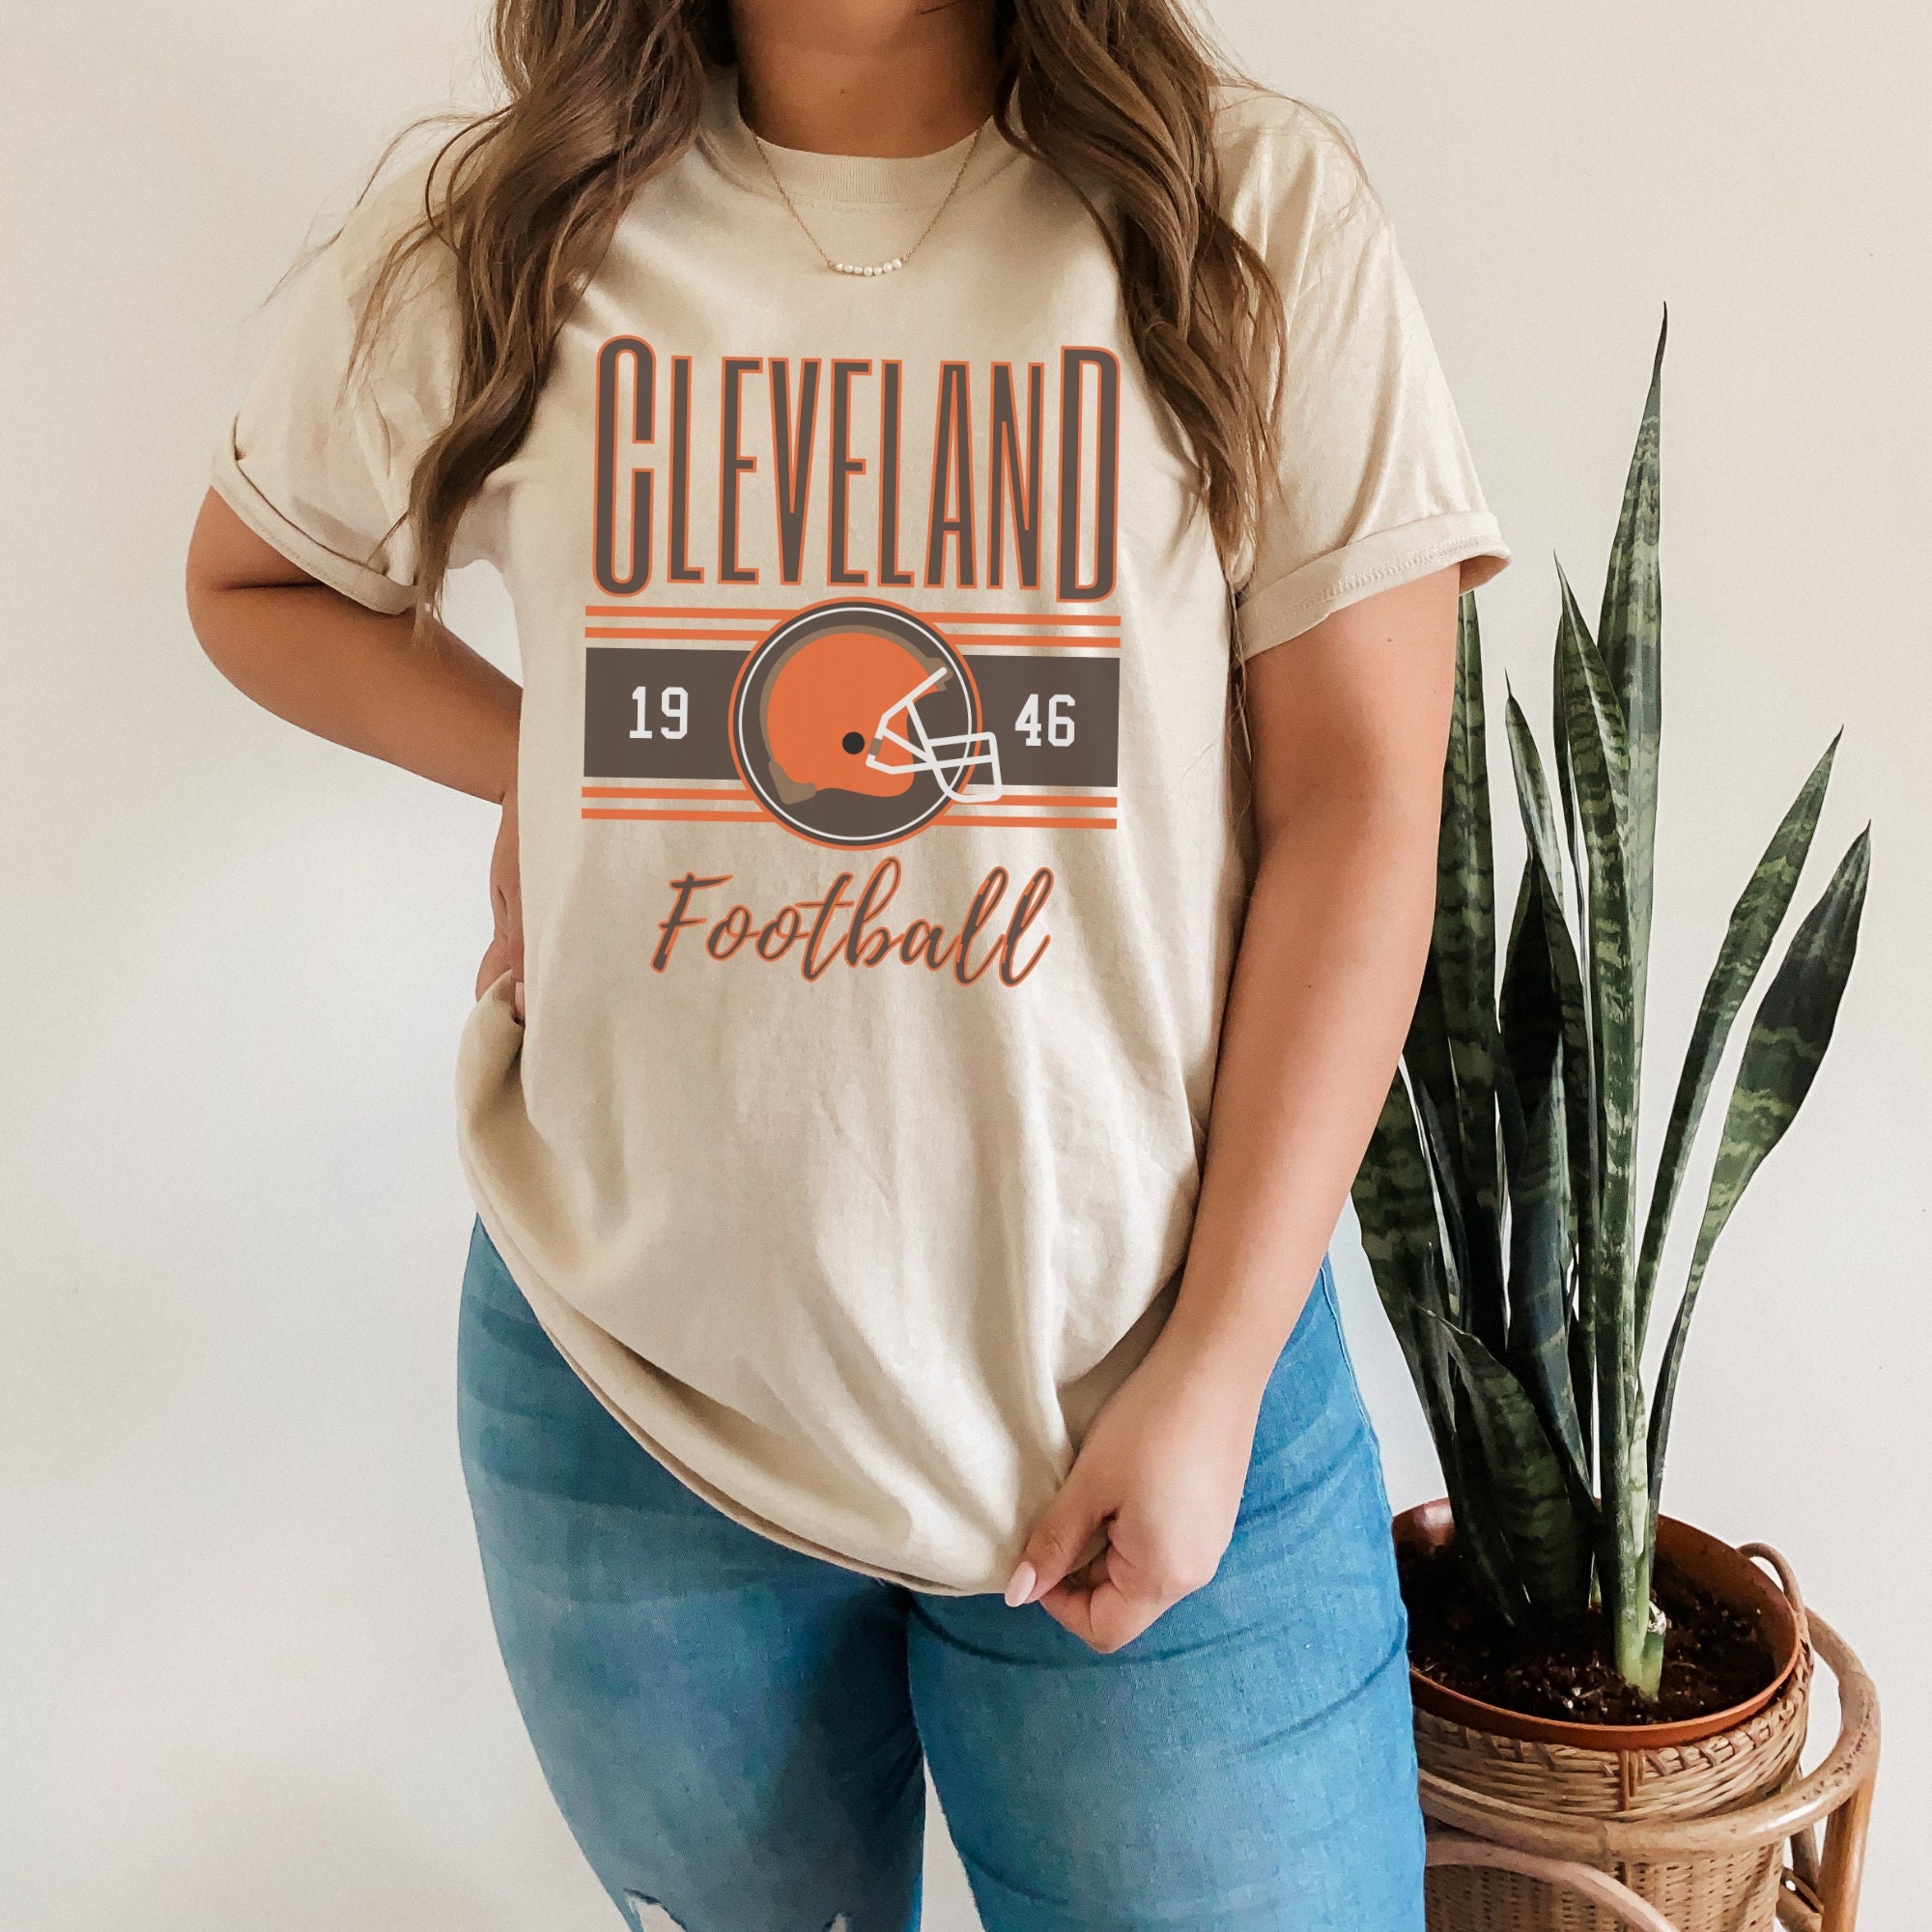 Buy Cleveland Football Retro T-shirt Vintage Cleveland Unisex